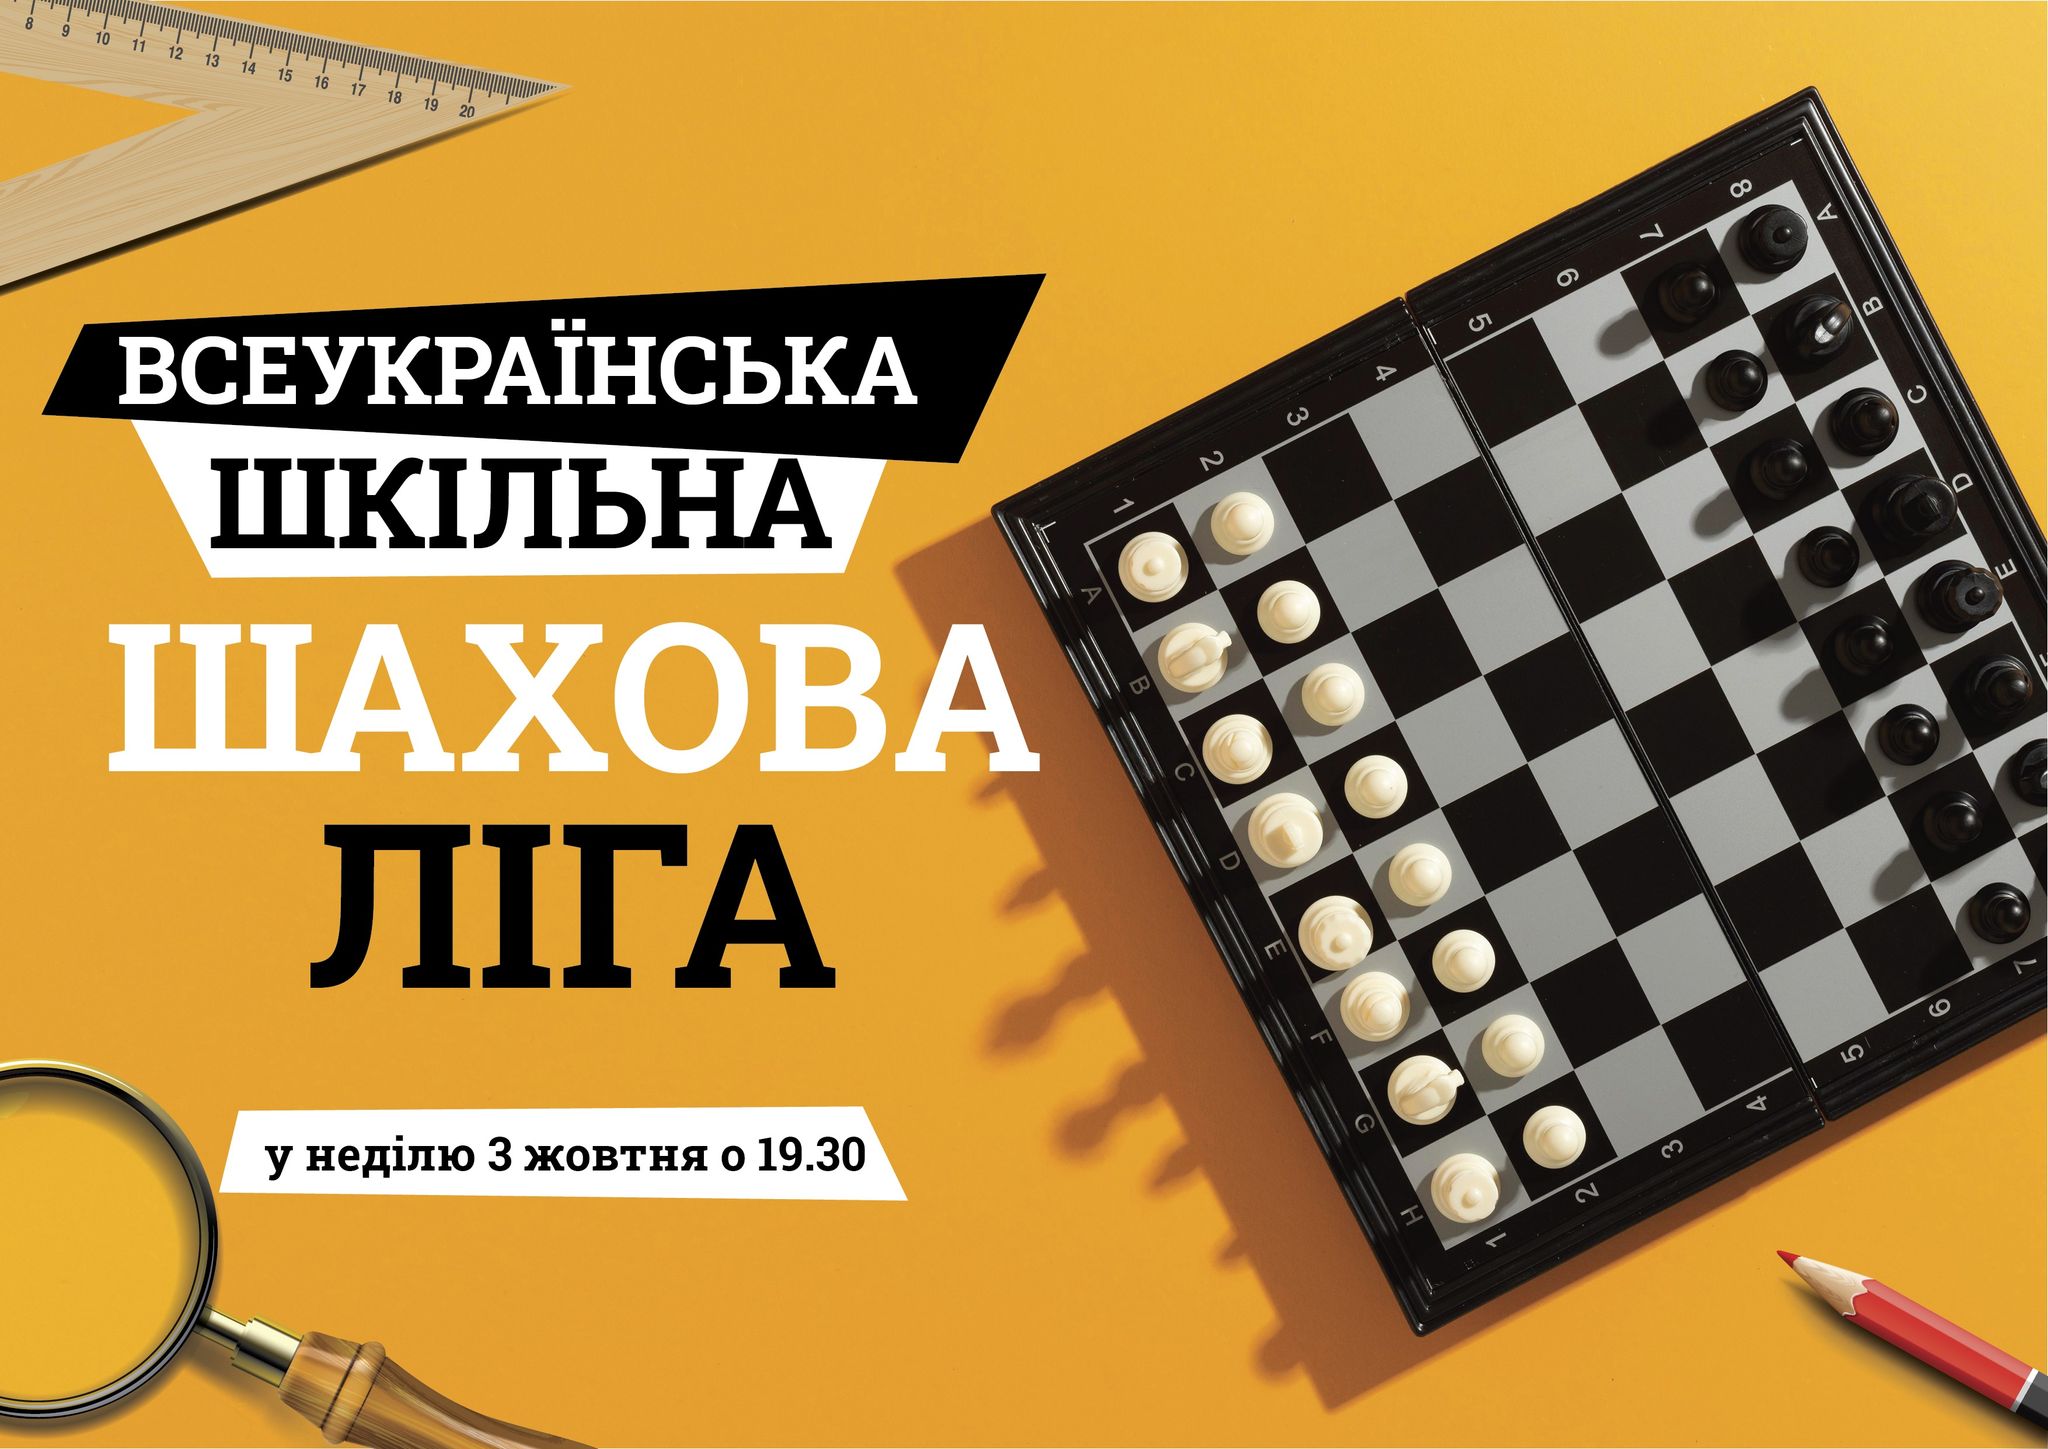 Третьи соревнования второго шахматного года 2021/22 «Всеукраїнська шкільна шахова ліга» (сезон октябрь-декабрь 2021 г.)